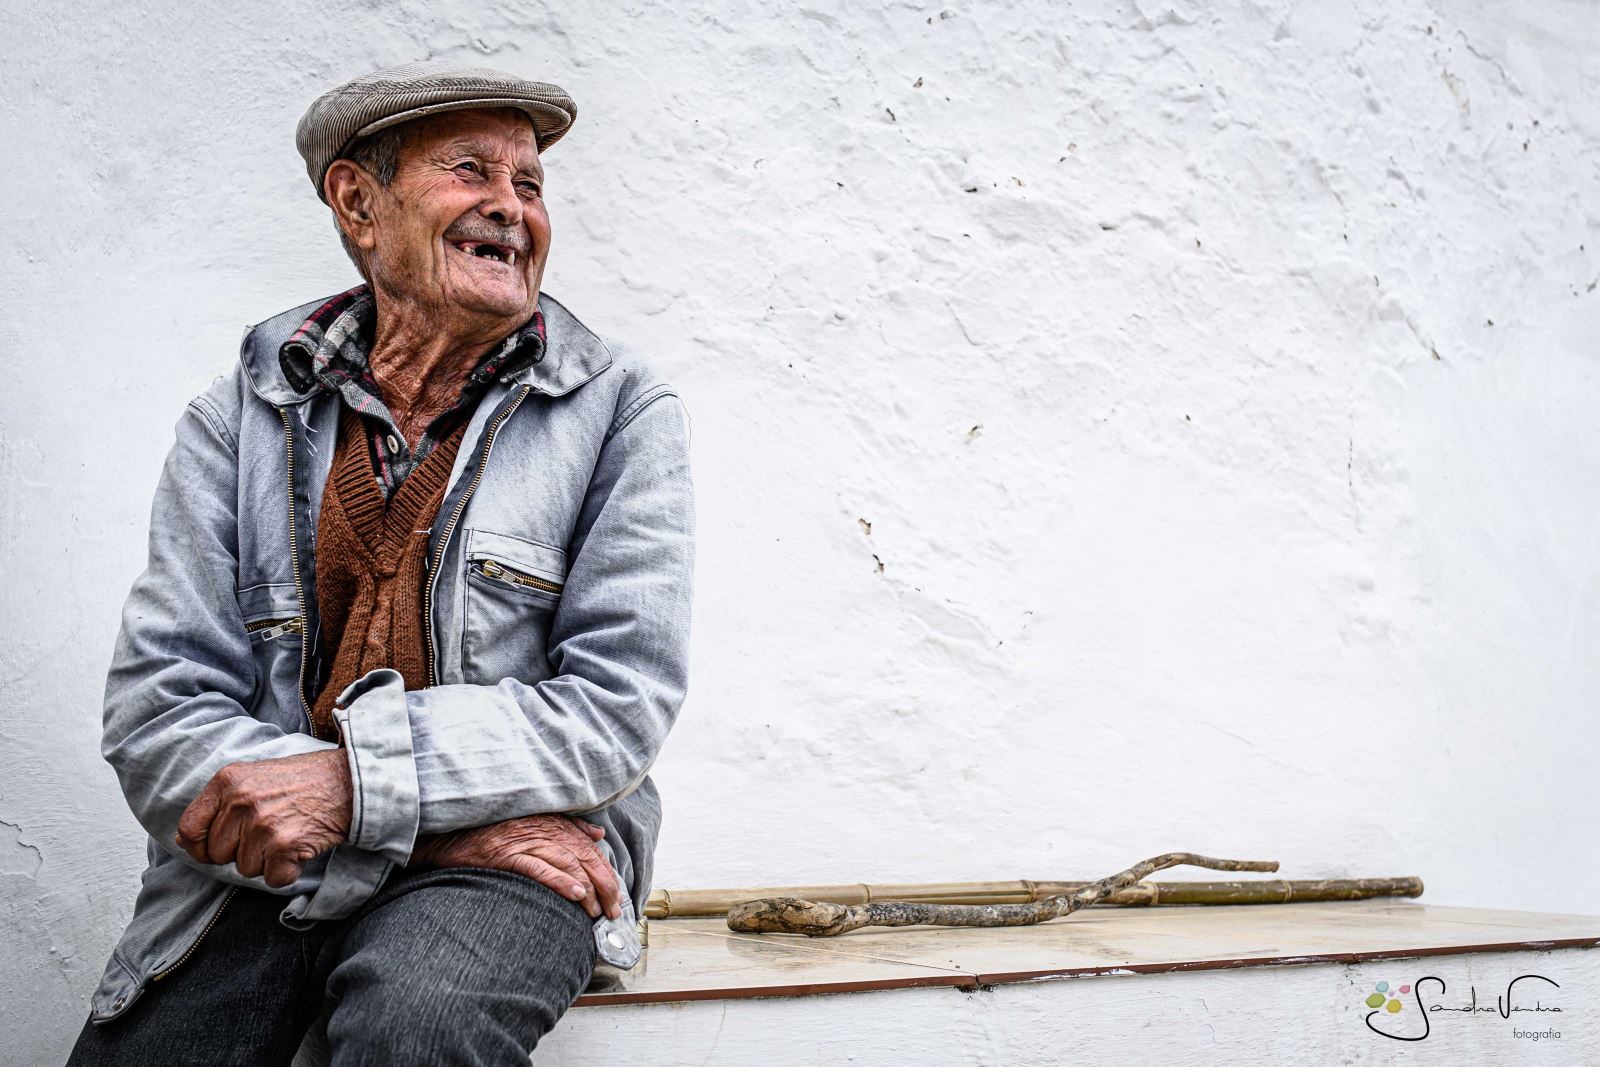 Mértola | Exposição fotográfica revela a beleza de idosos 